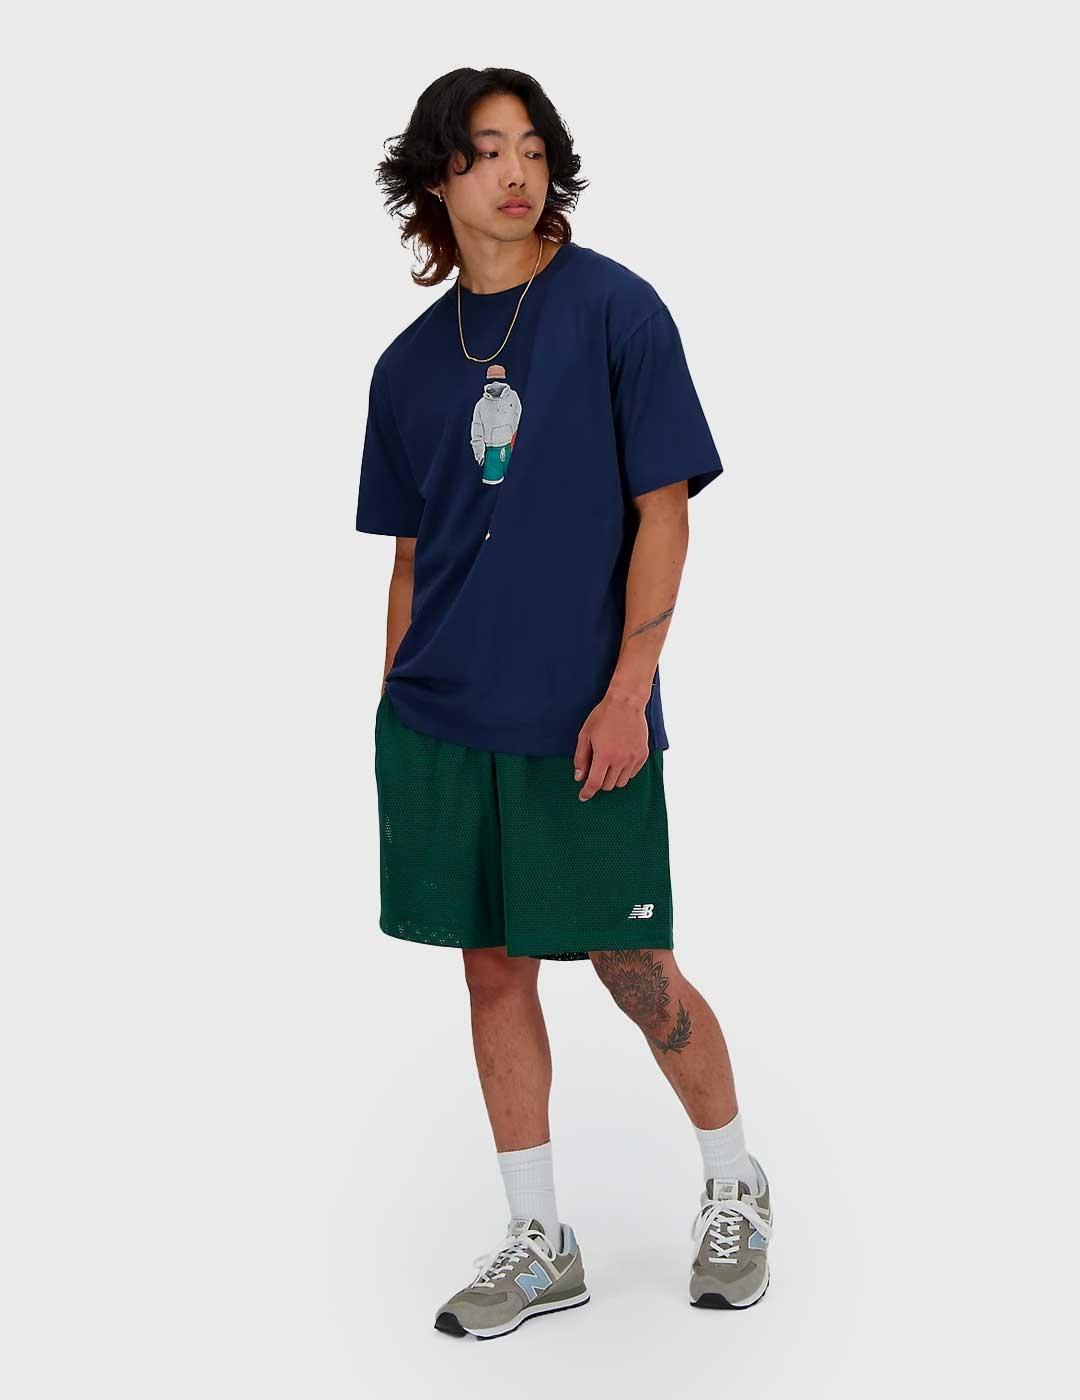 Camiseta New Balance Athletics Basketball marino para hombre